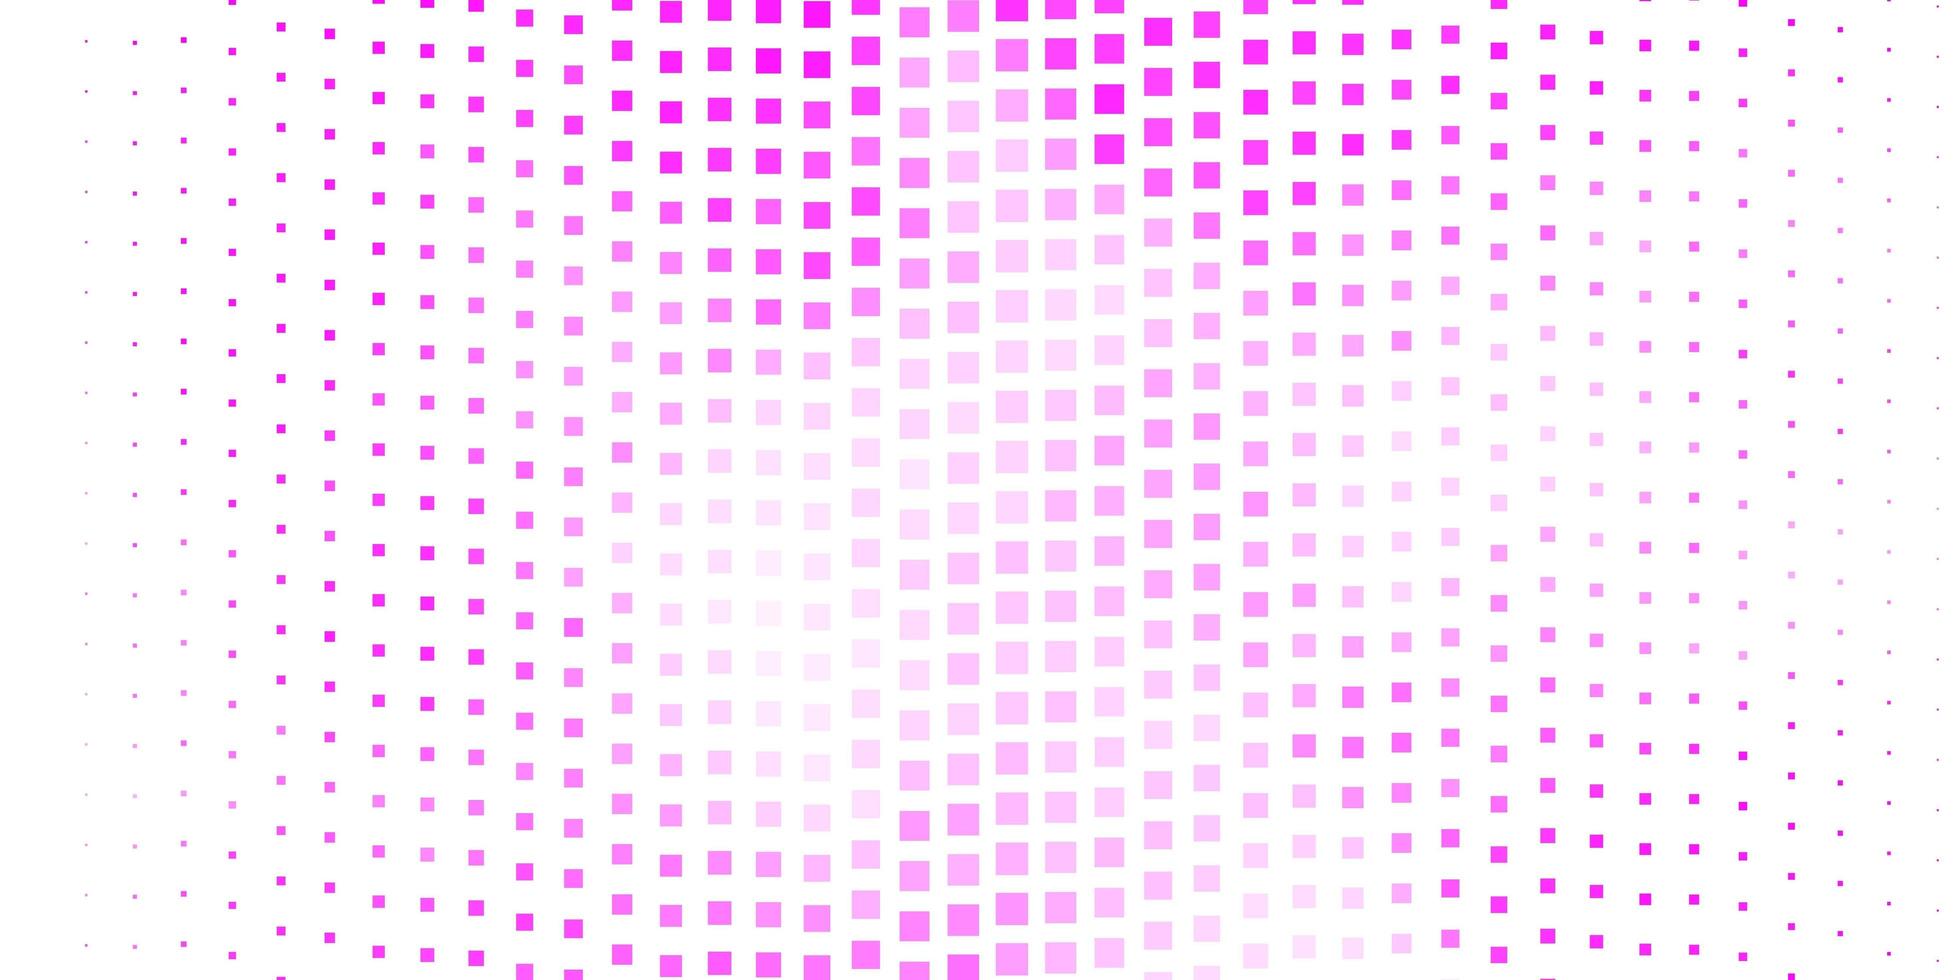 modelo de vetor rosa escuro com retângulos.